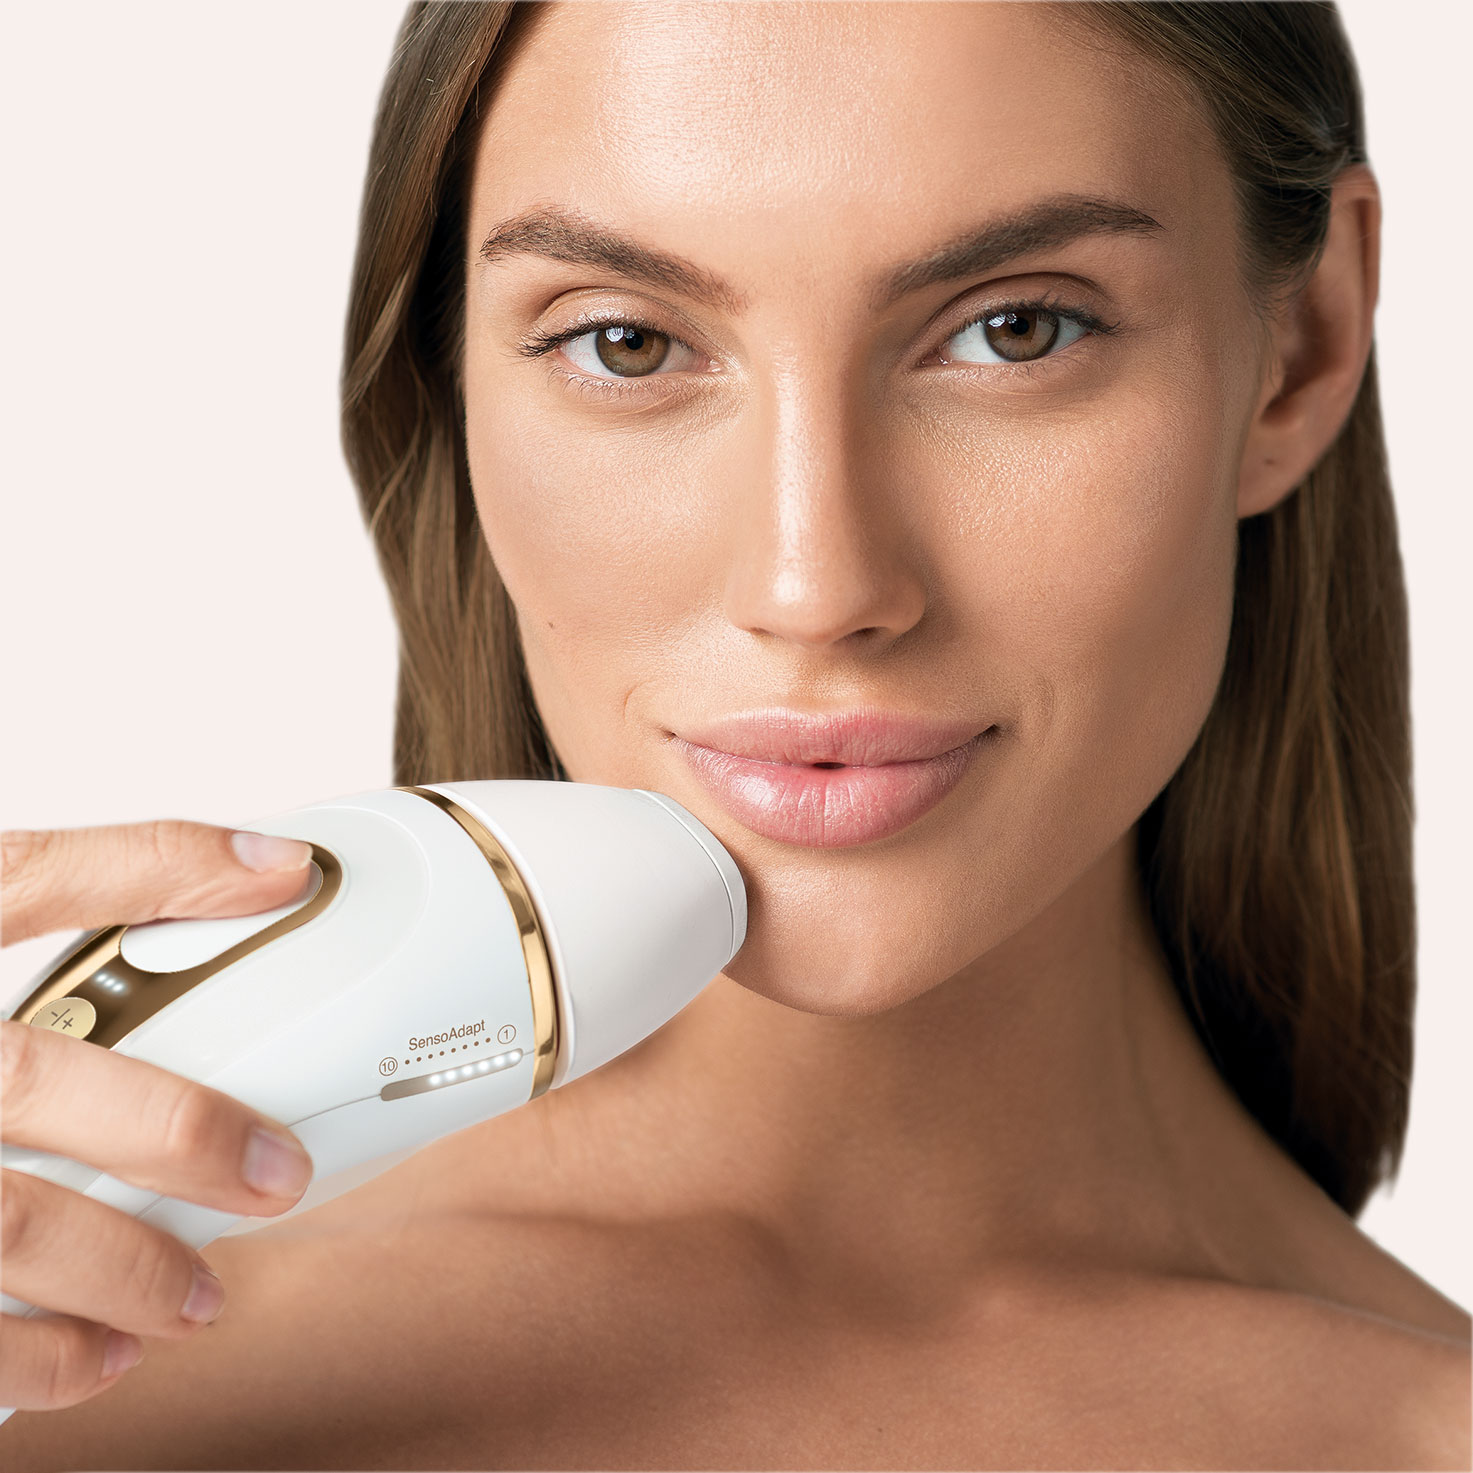 Braun Silk-expert Pro 5 ¿Es la mejor depiladora de luz pulsada para  hombres? Características y modelos. - Prestazion